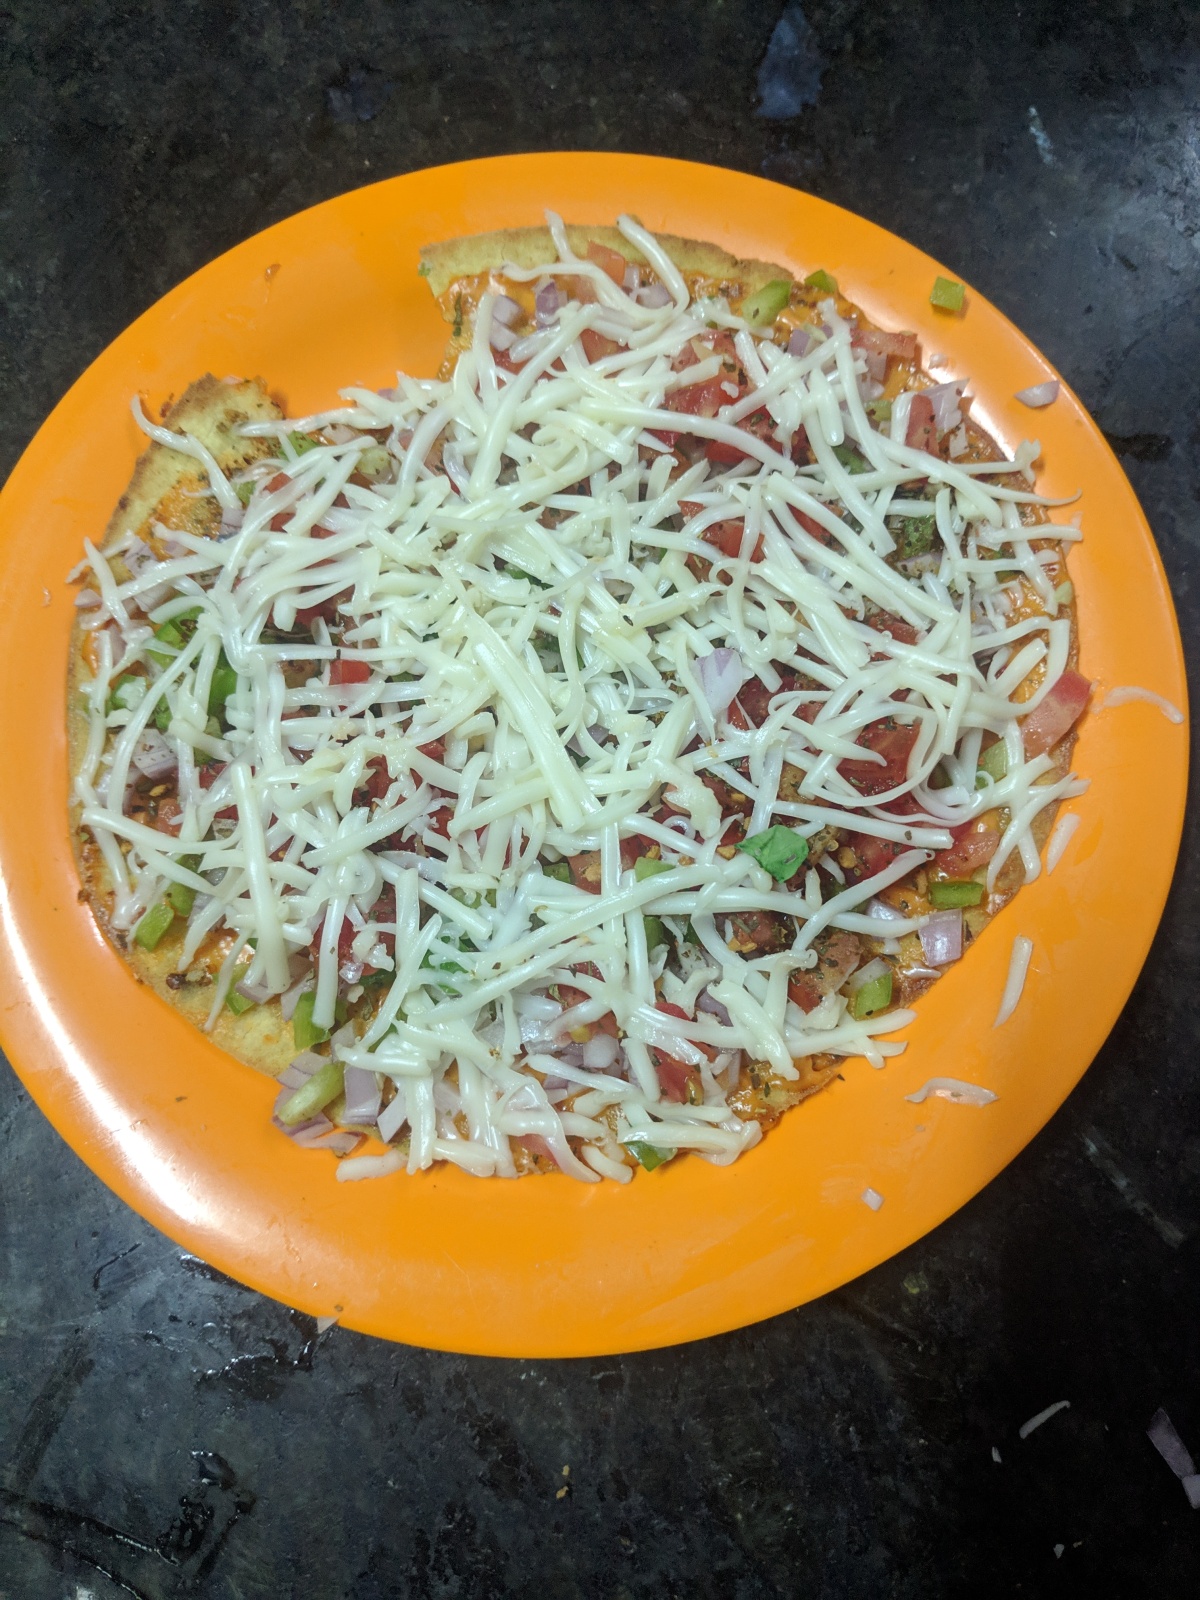 Pizza Khakhra